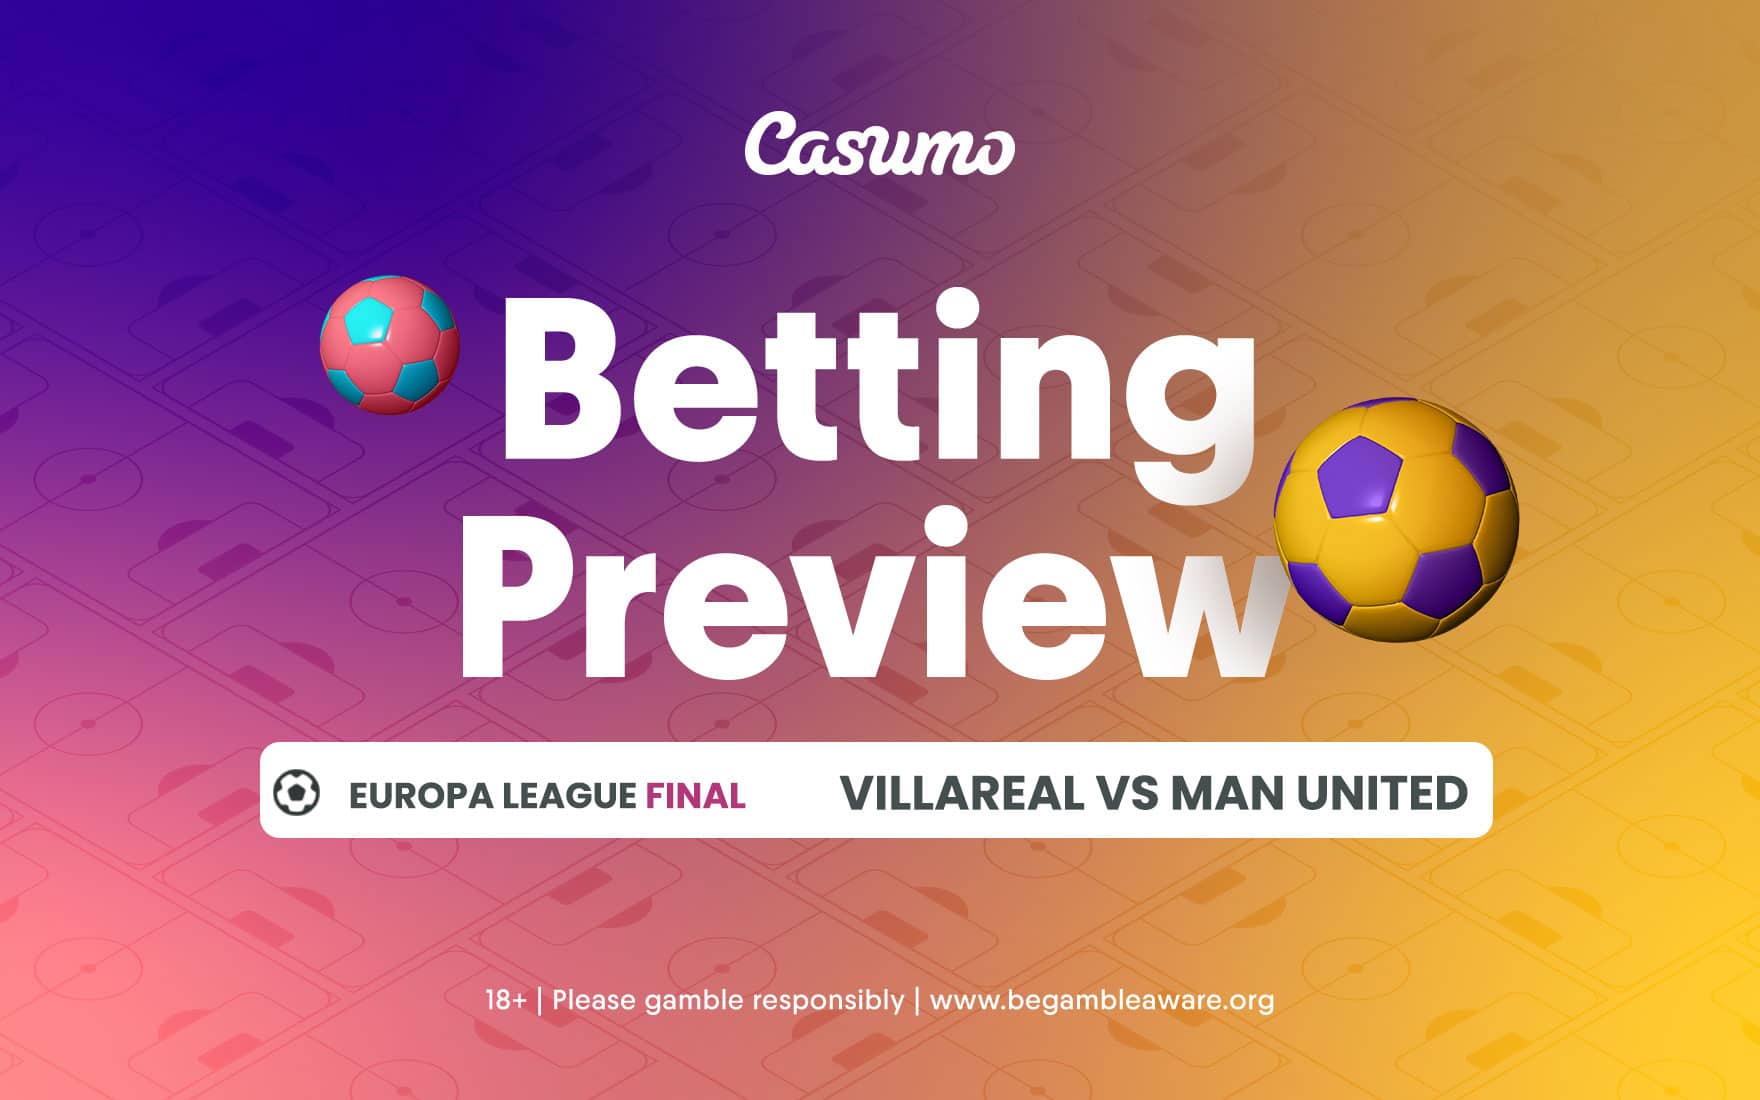 Europa League Final betting tips